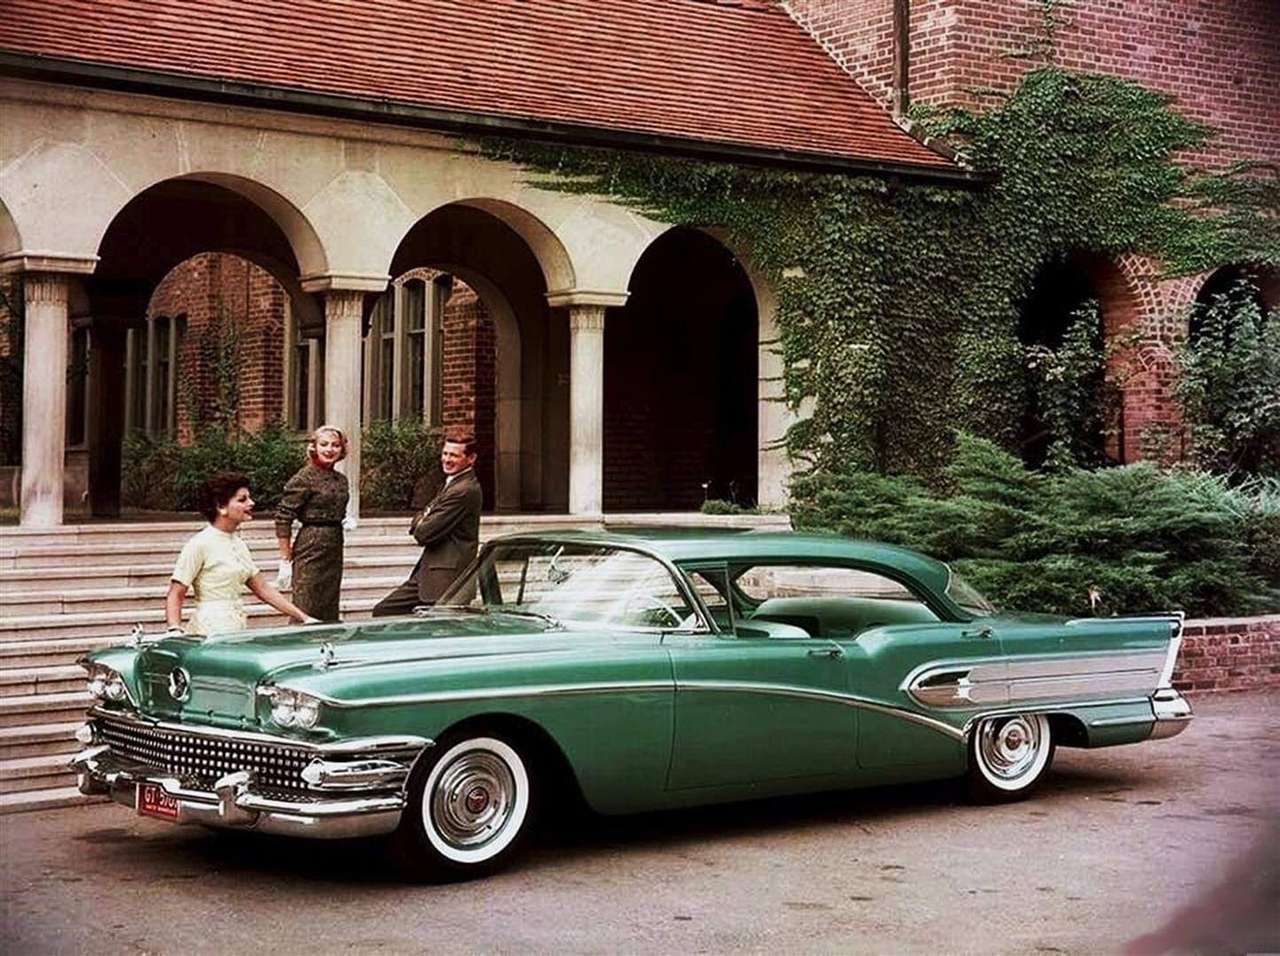 1958 Buick quebra-cabeças online